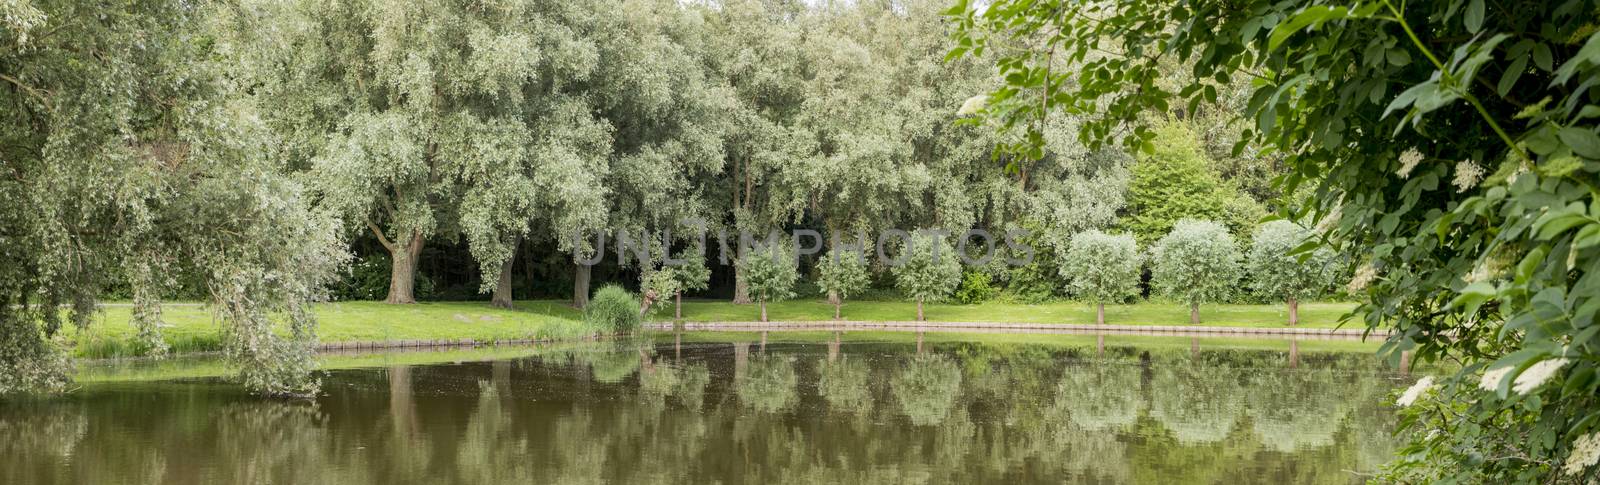 big garden in park in holland by compuinfoto